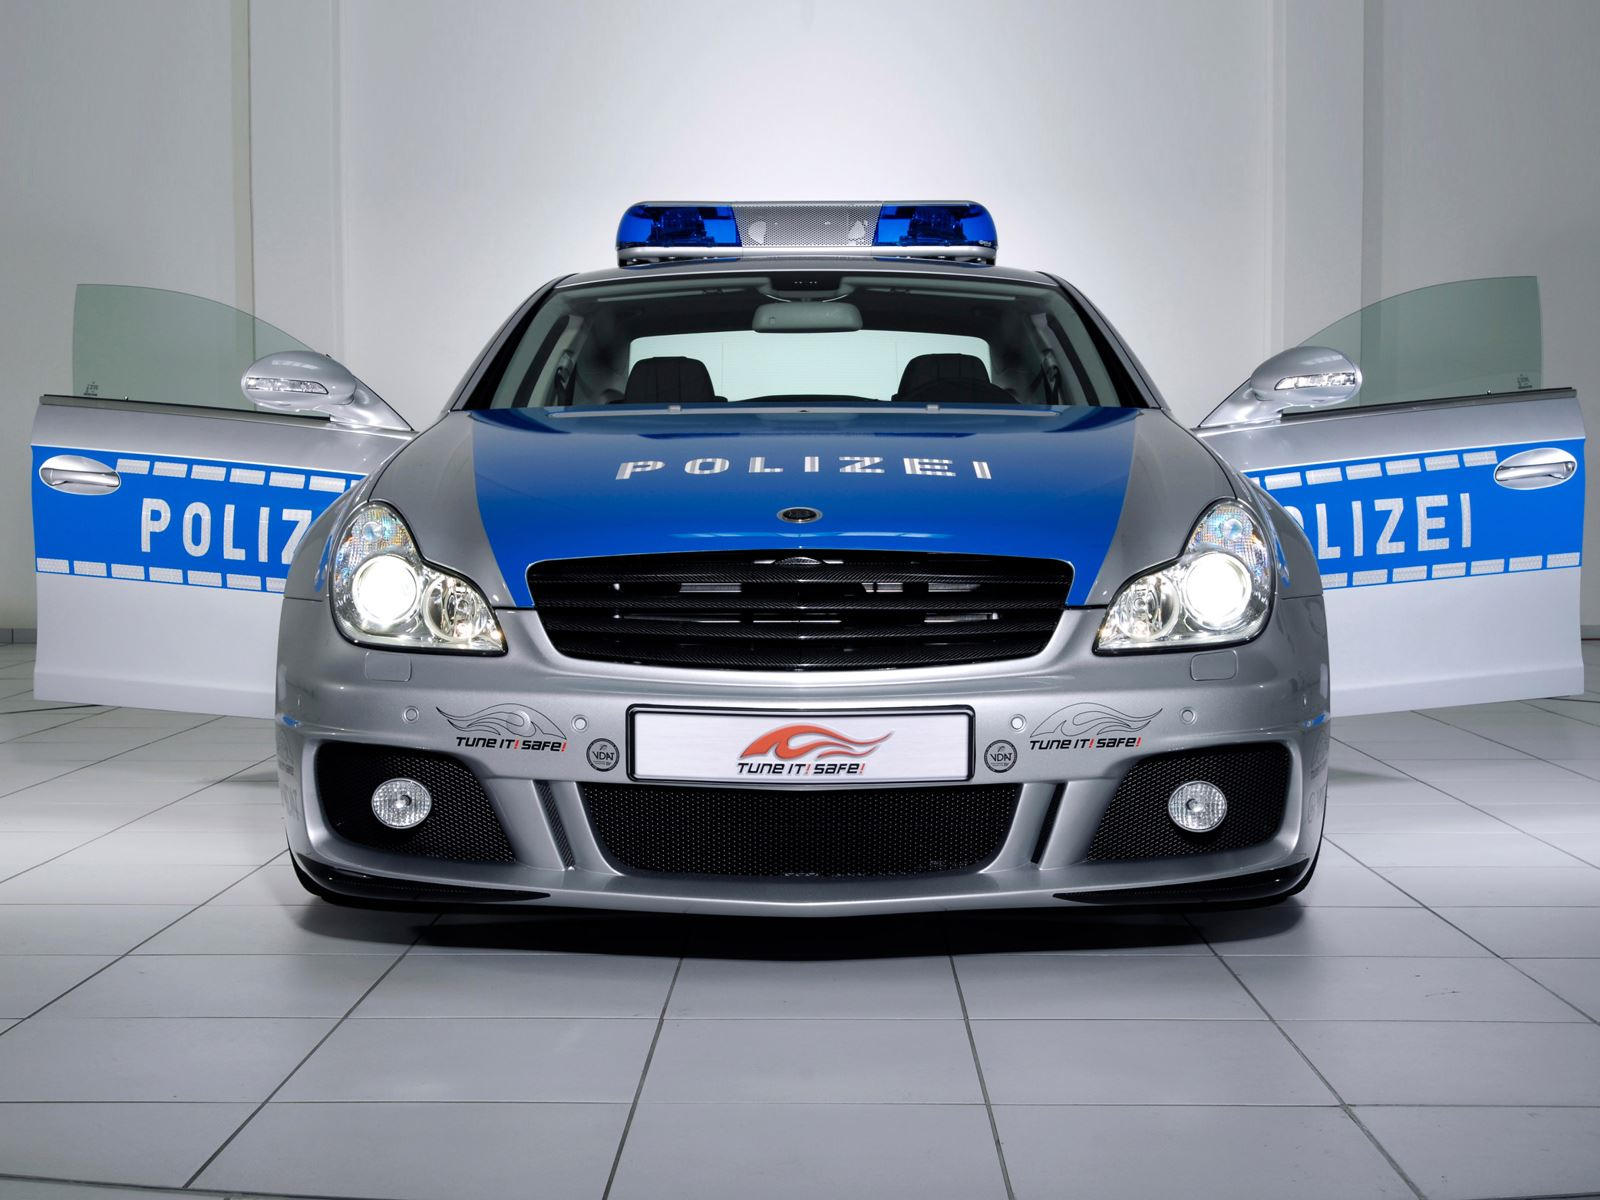 "بالصور" أكثر 10 سيارات شرطة تميزا حول العالم 55